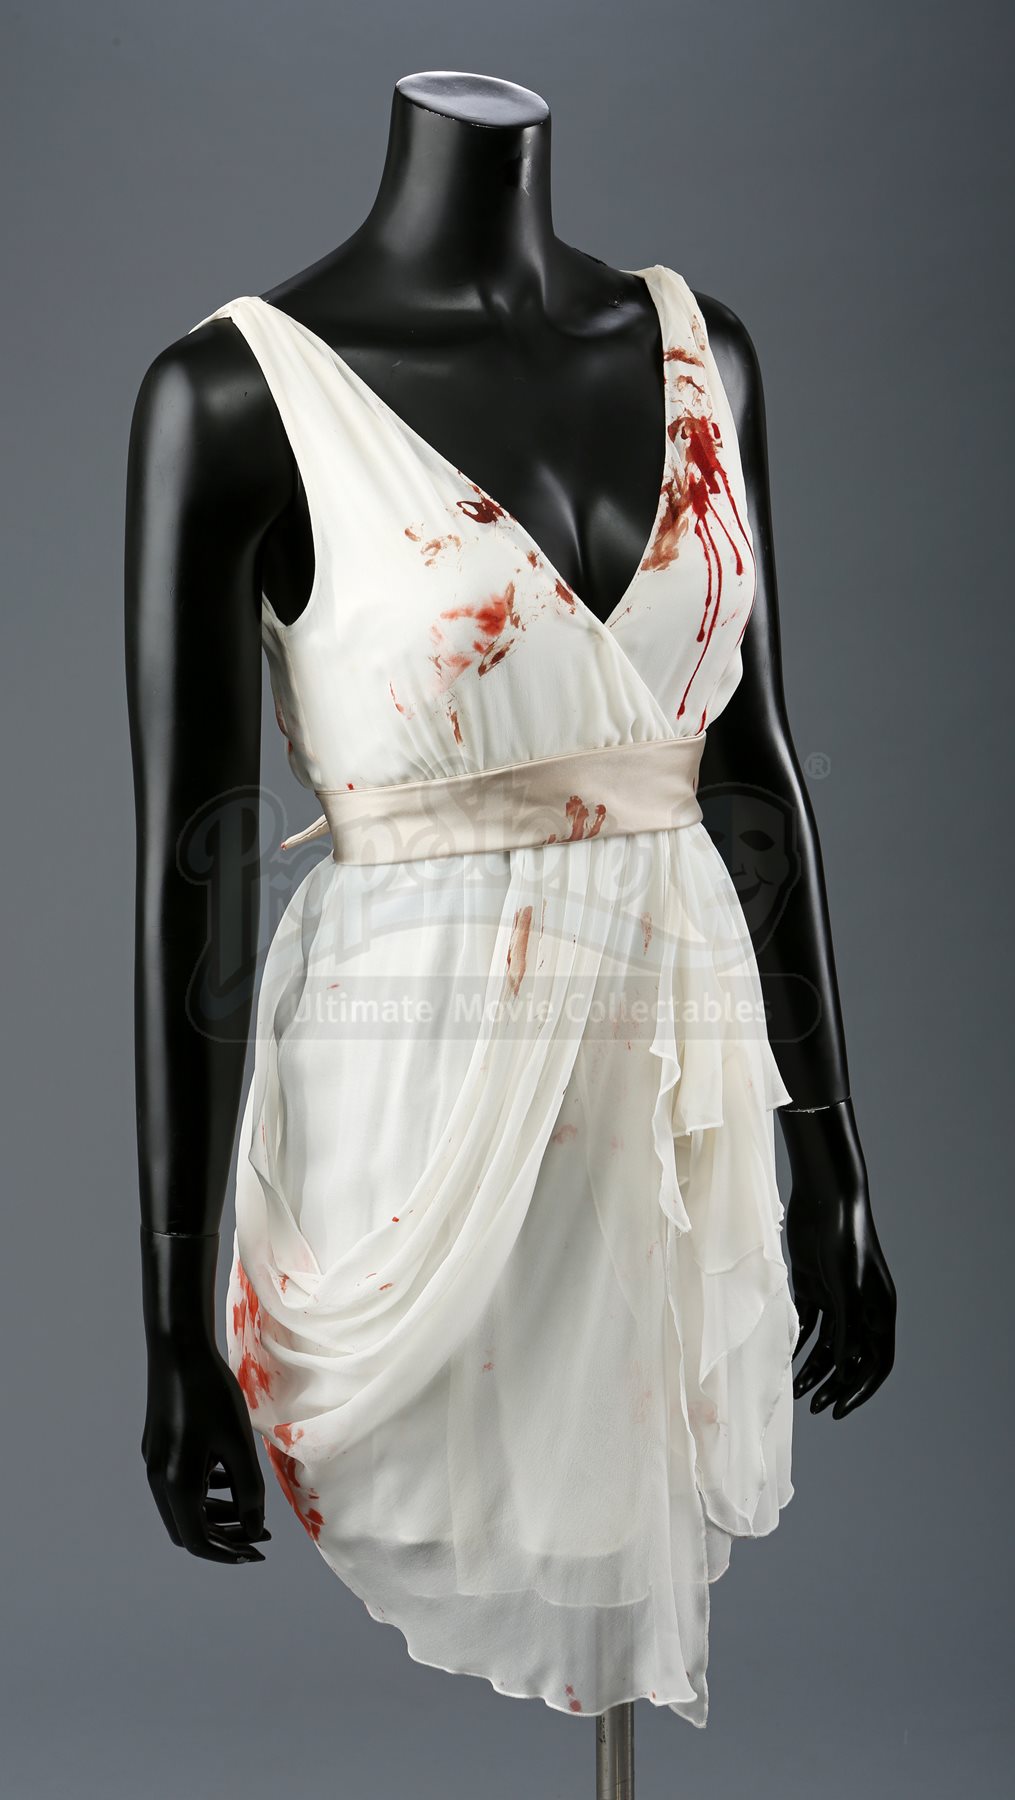 Renée Dwyer’s Bloodstained Nightmare Wedding Dress